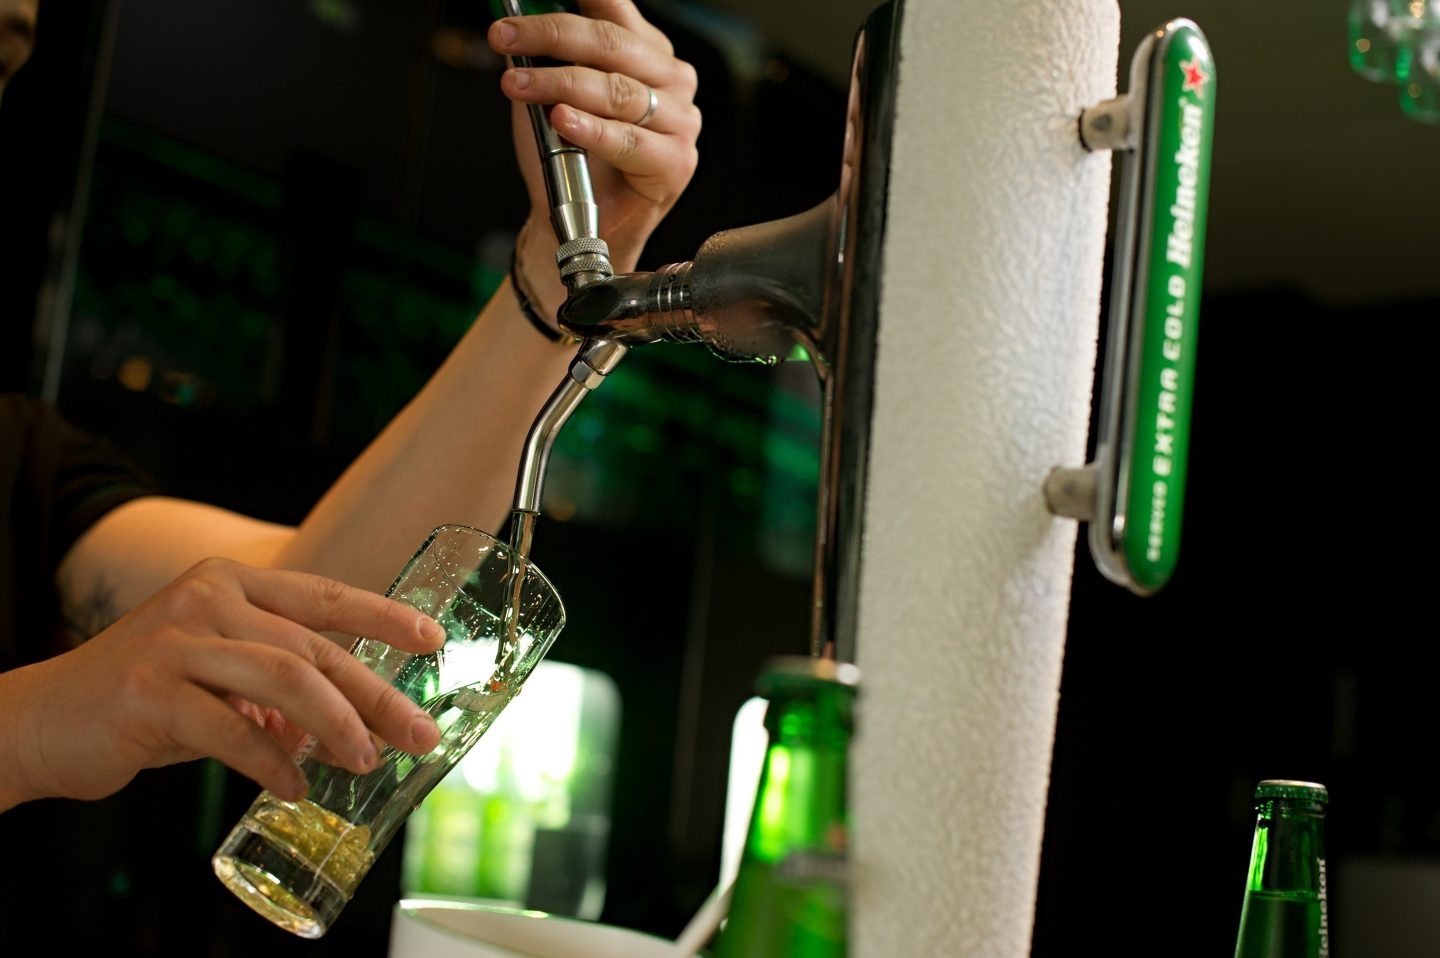 El consumo de cerveza sigue en aumento y supone hasta el 40% de la facturación de algunos locales de hostelería.